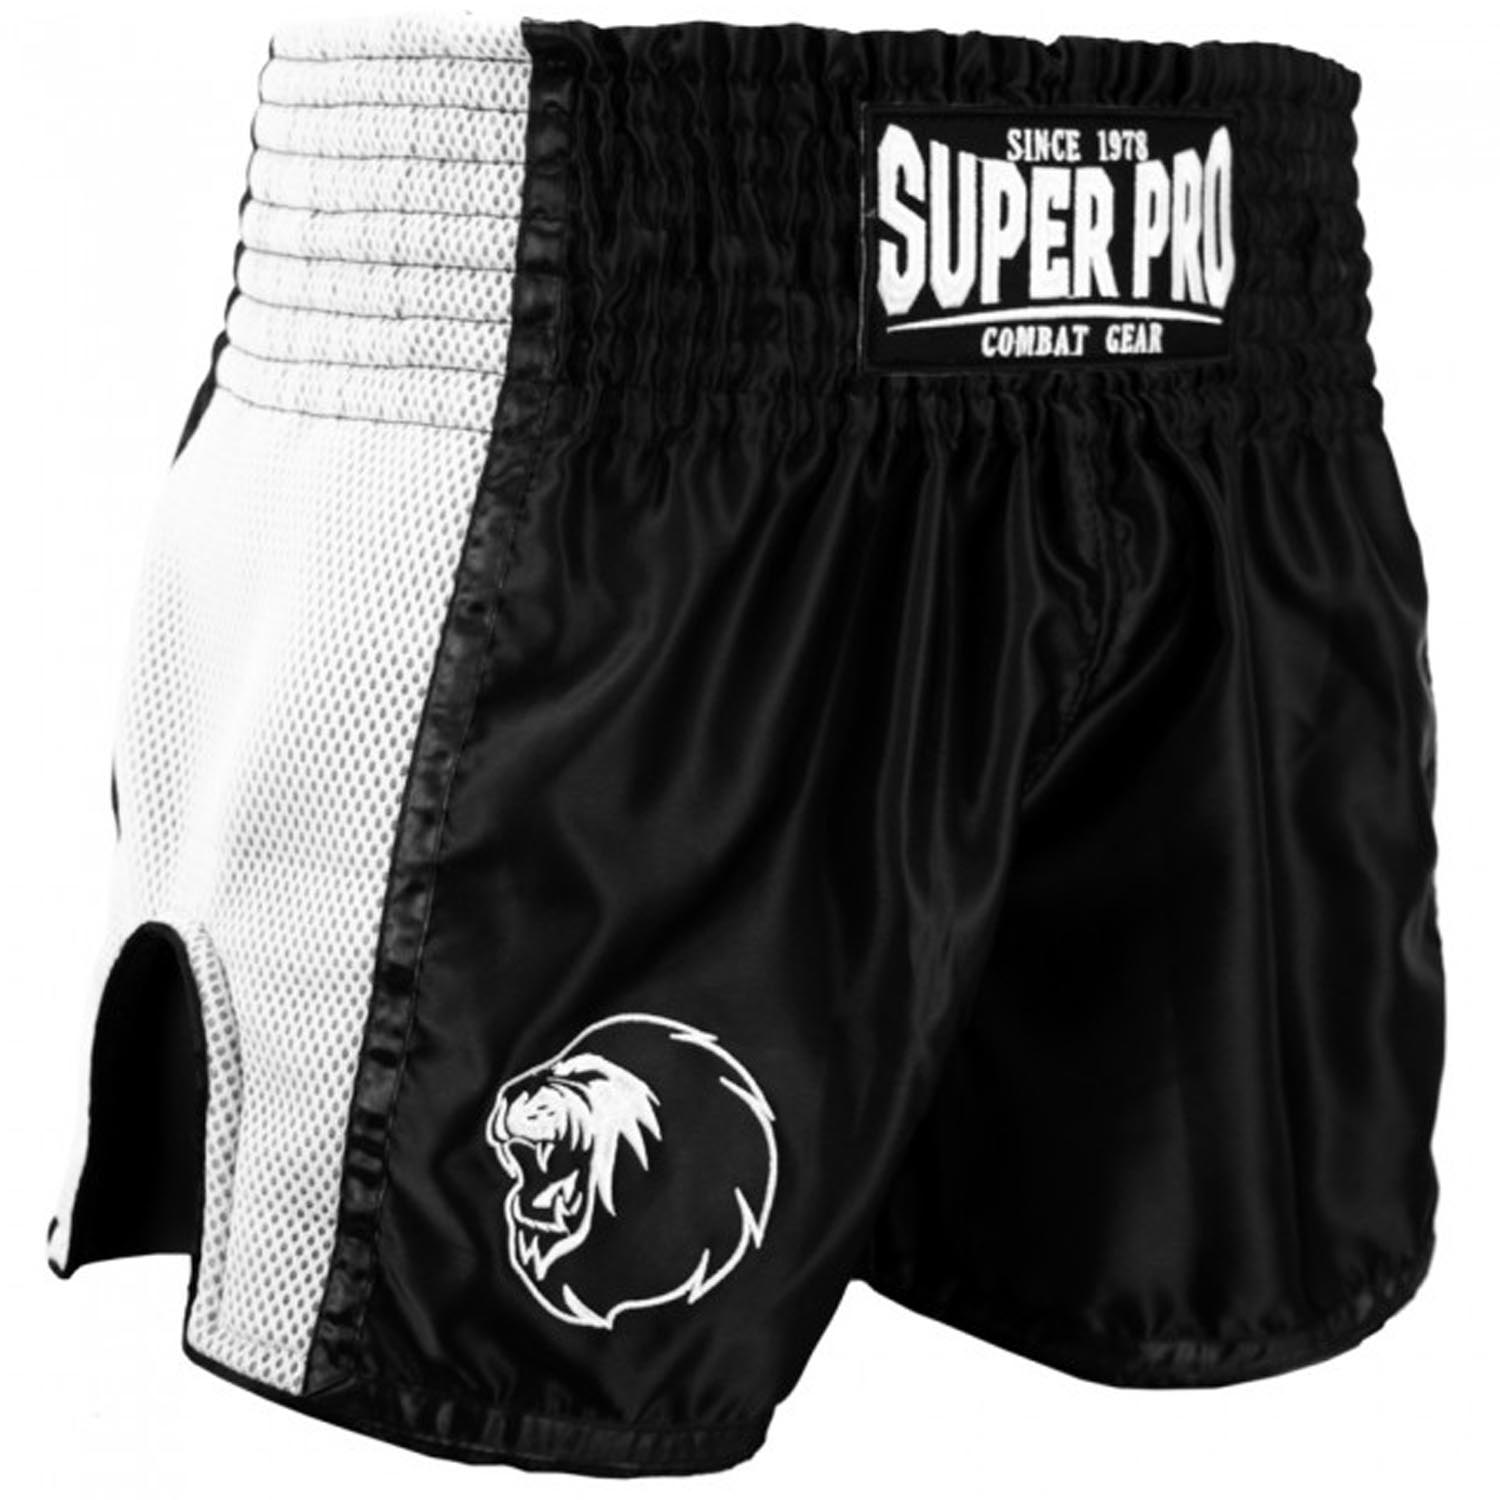 Super Pro Muay Thai Shorts, Brave, black-white, XXL